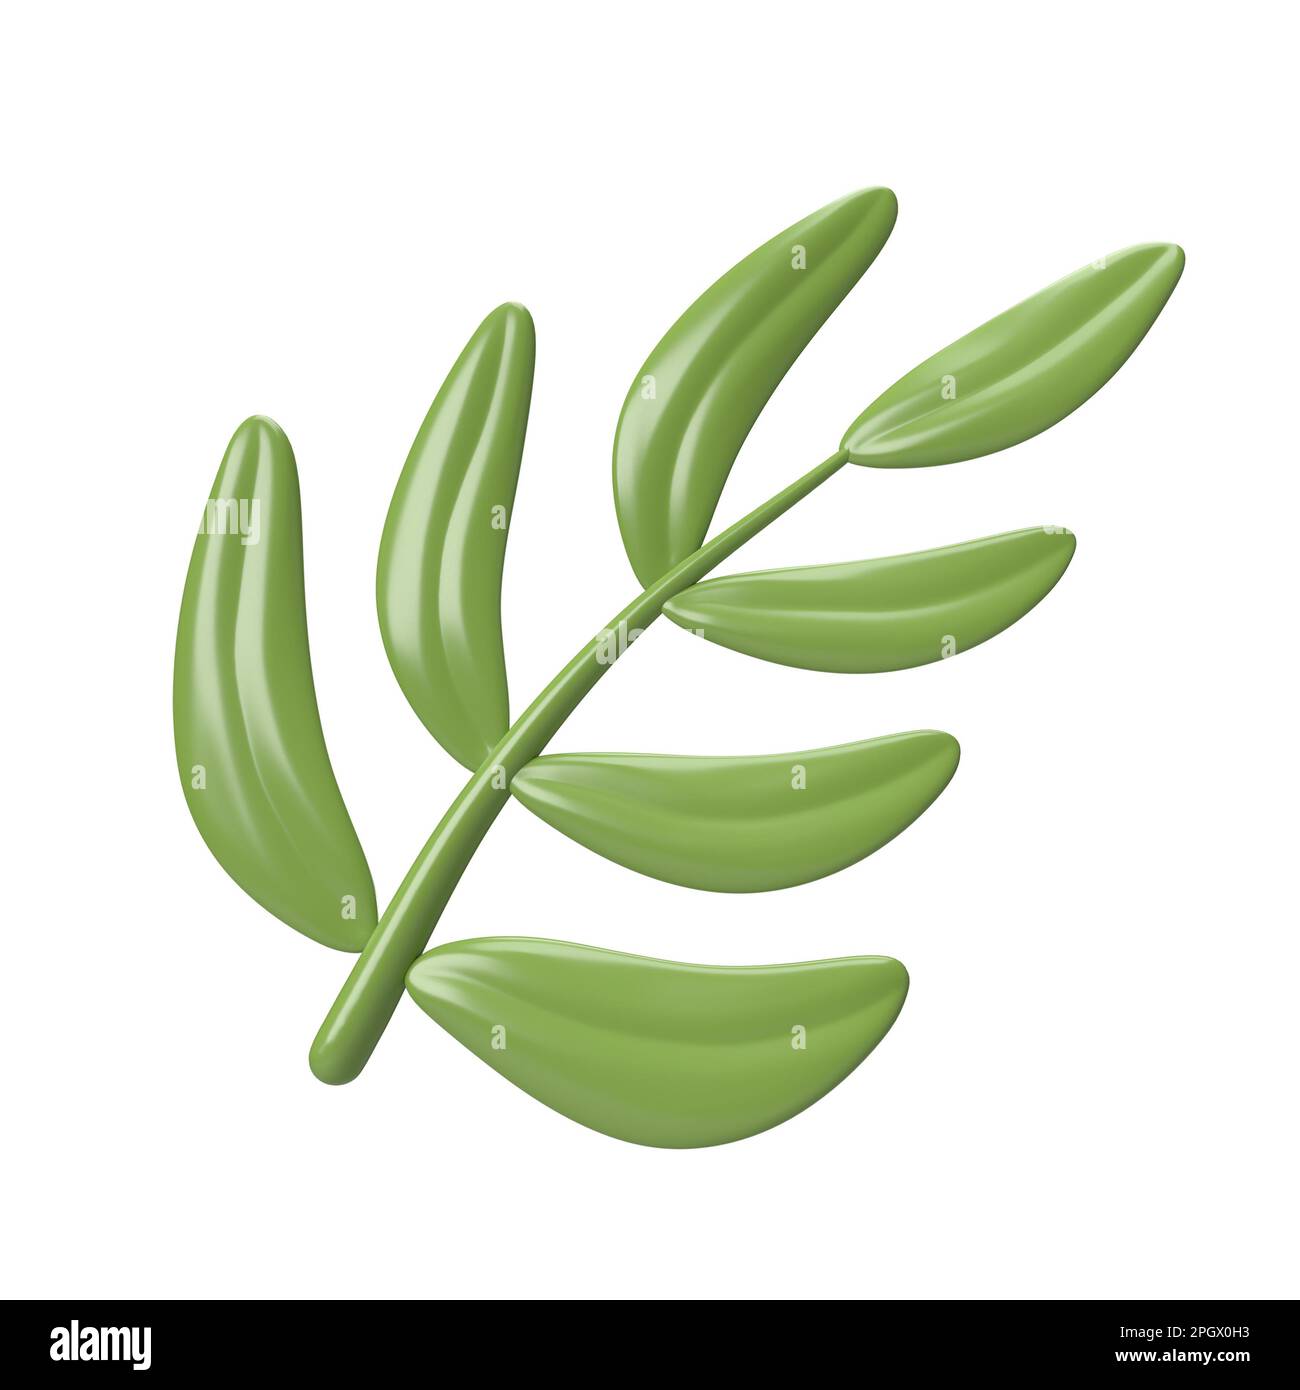 Süße 3D Icon detaillierter grüner Palmenzweig. Triumphaler Eintritt in Jerusalem oder Palm Sunday. Abbildung isoliert auf Beschneidungspfad mit weißem Hintergrund Stockfoto